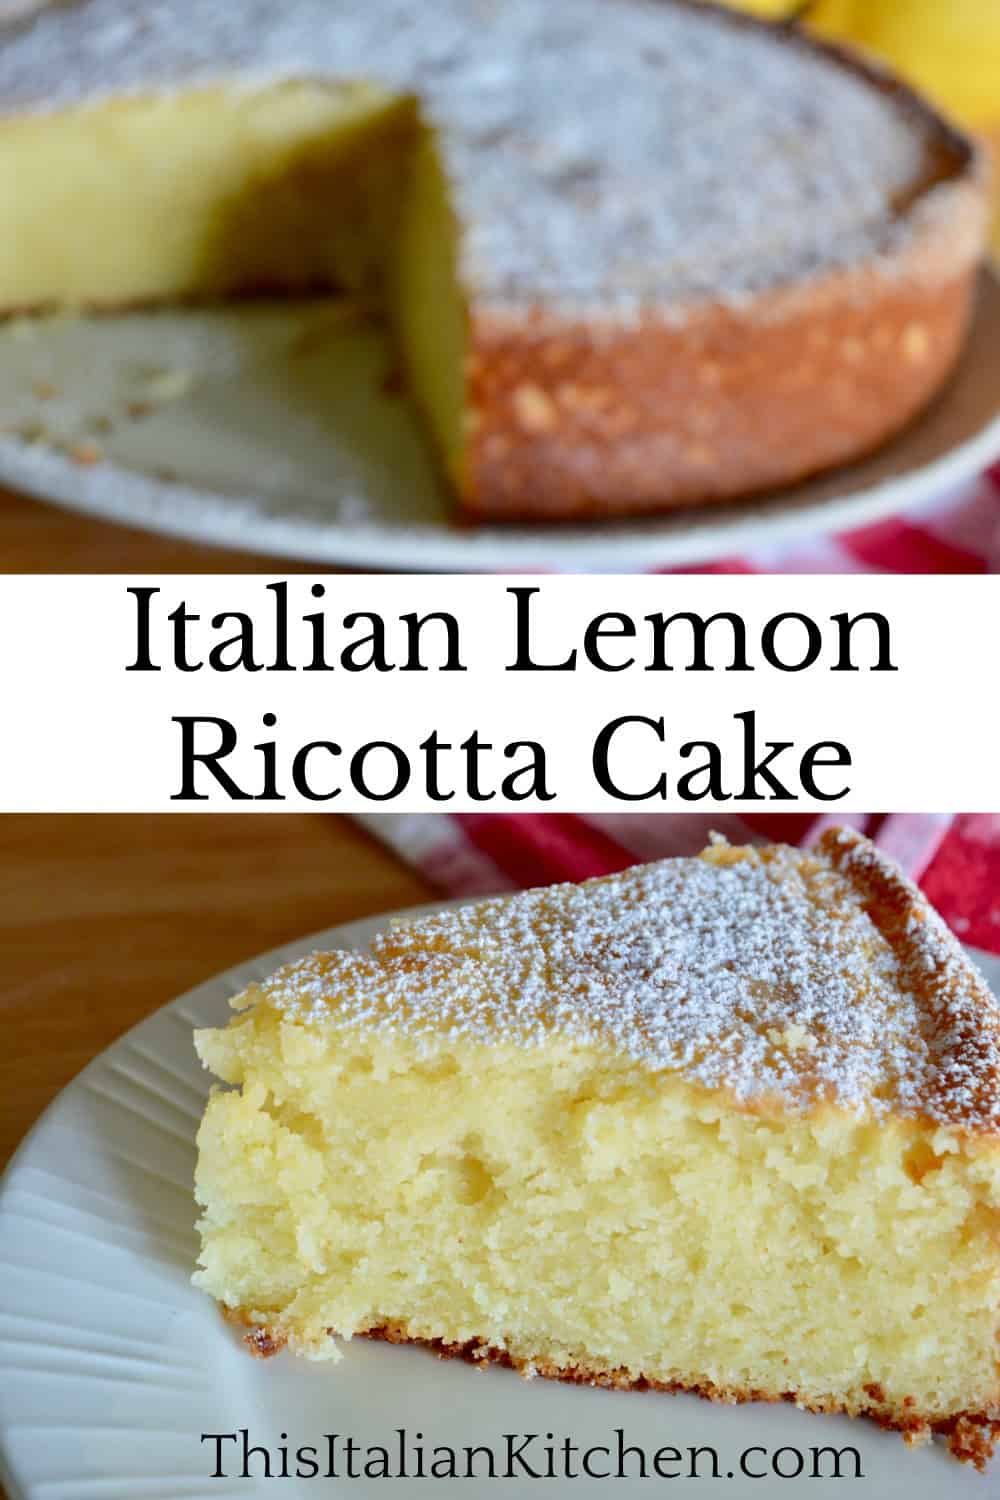 Italian Lemon Ricotta Cake | Light & Moist Recipe - This Italian Kitchen